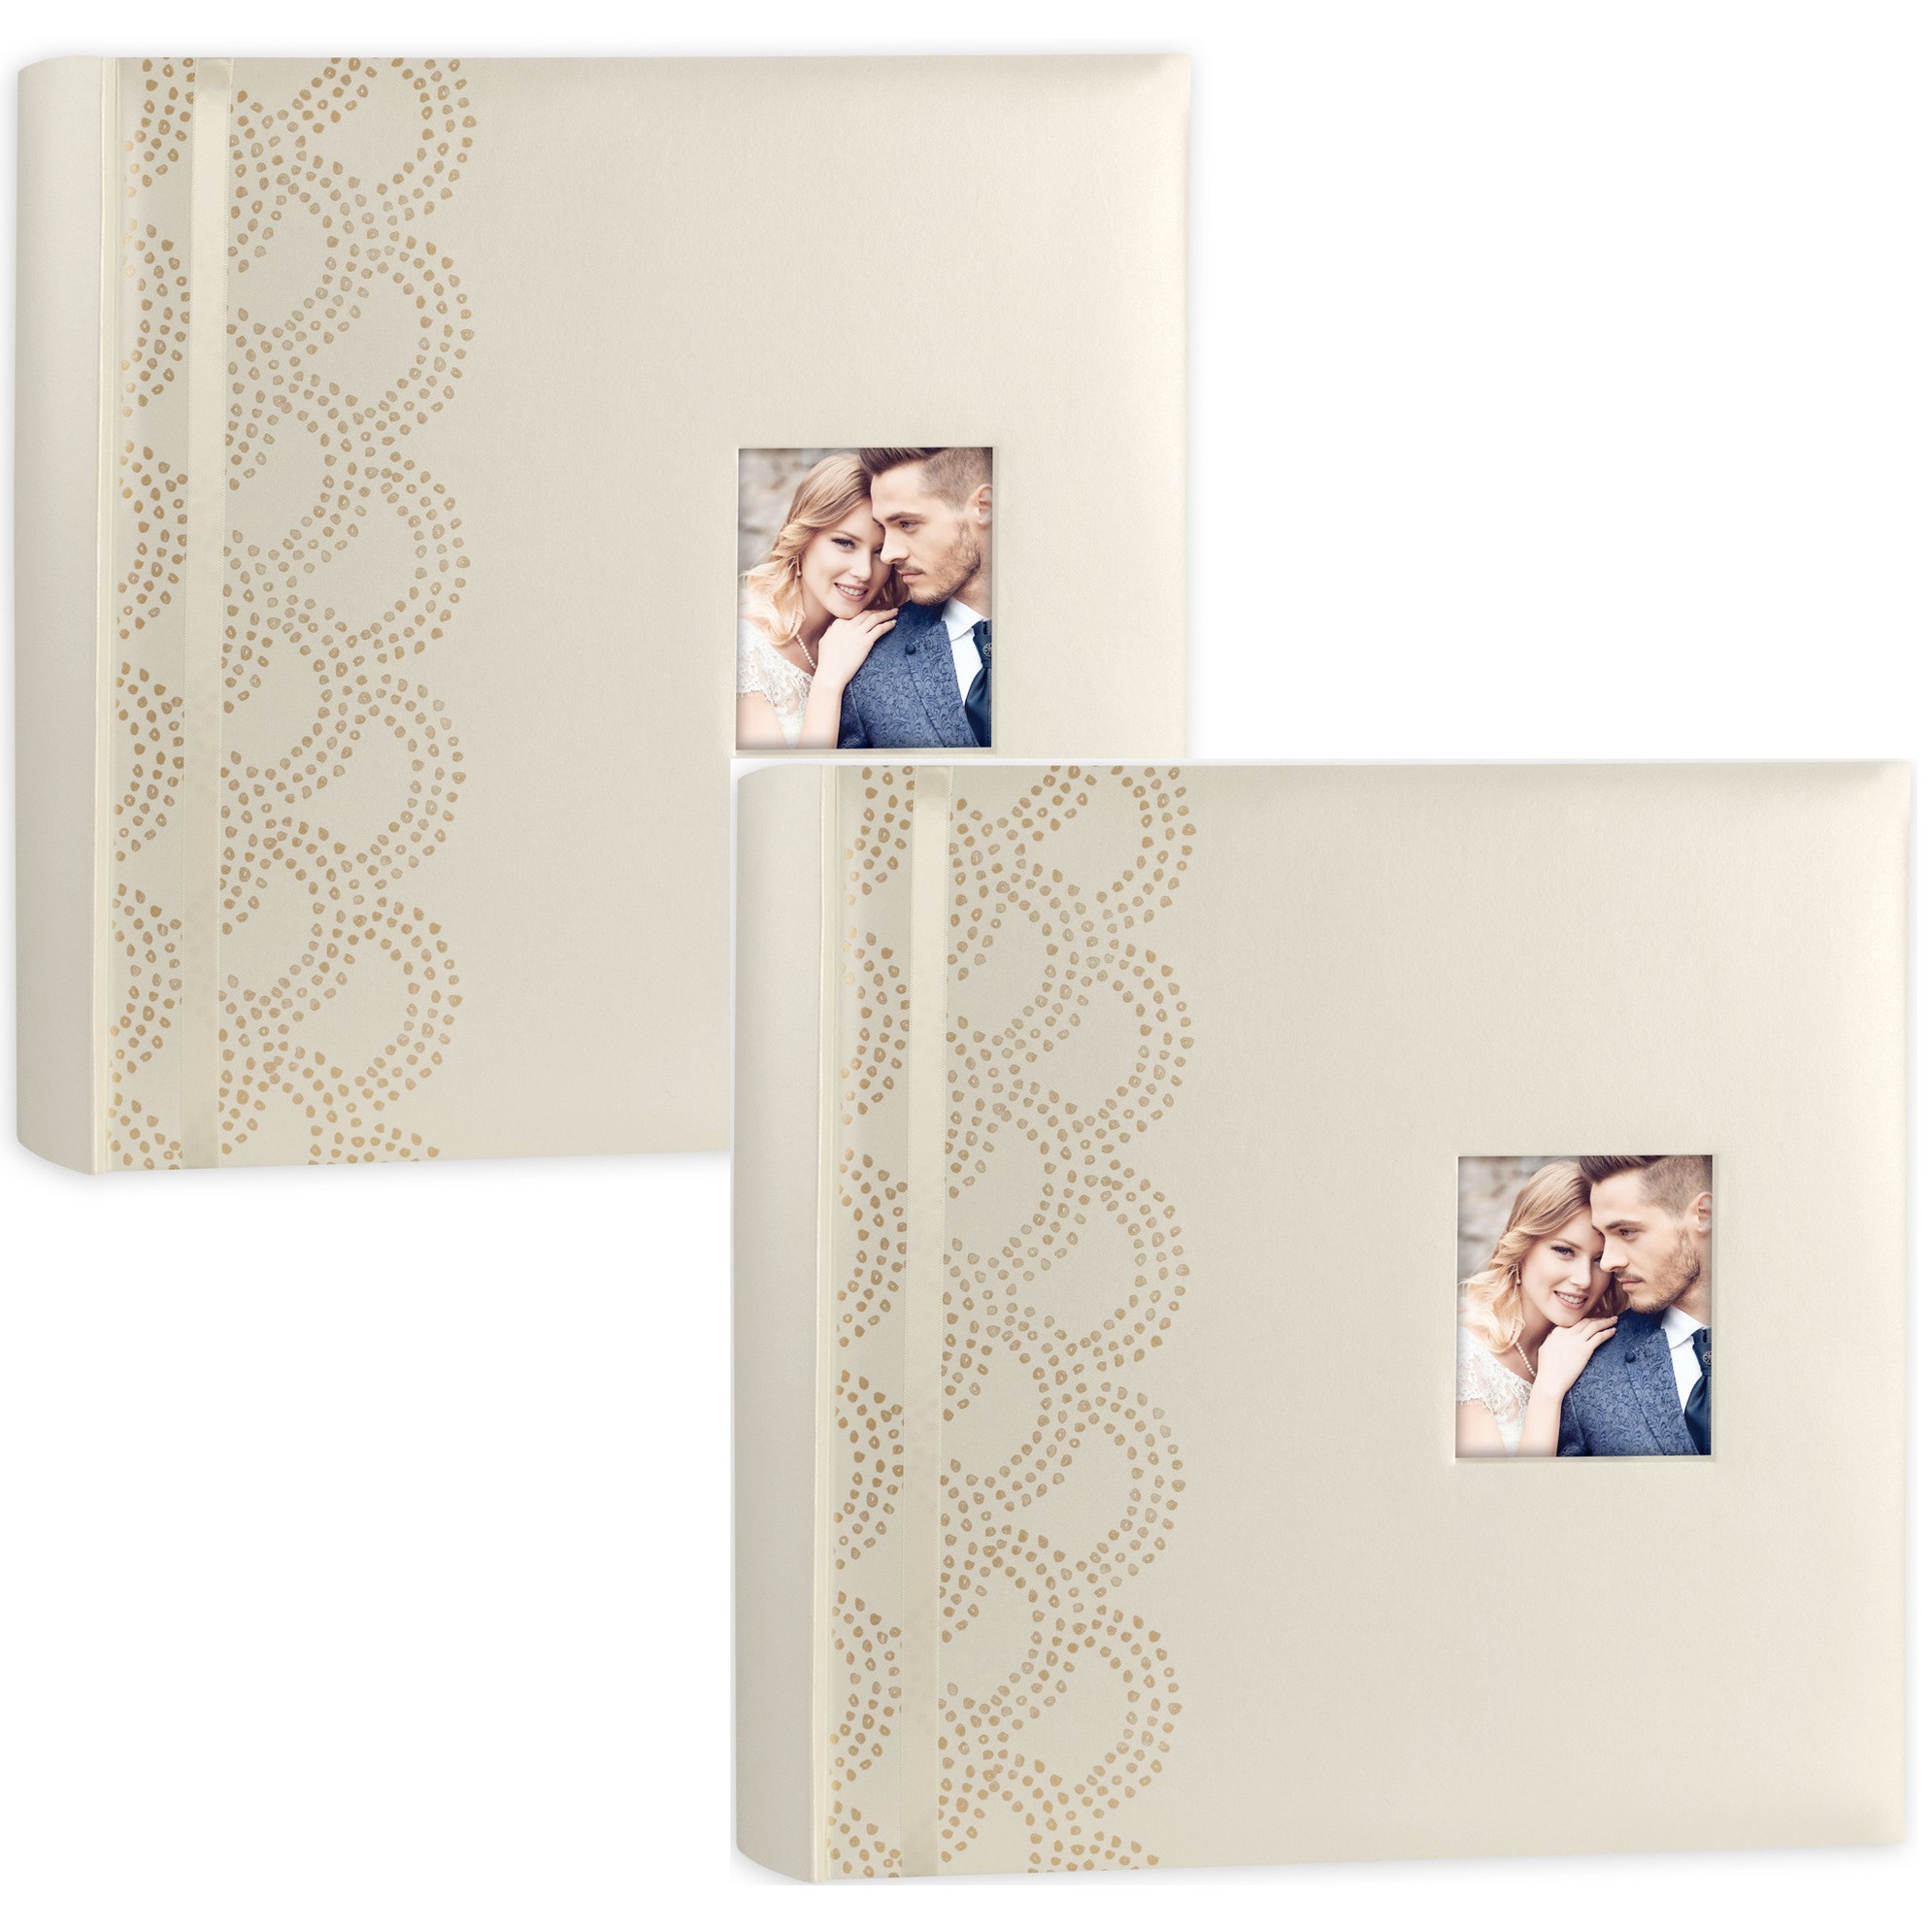 2x Luxe fotoboek-fotoalbum Anais bruiloft-huwelijk met 50 paginas goud 32 x 32 x 5 cm